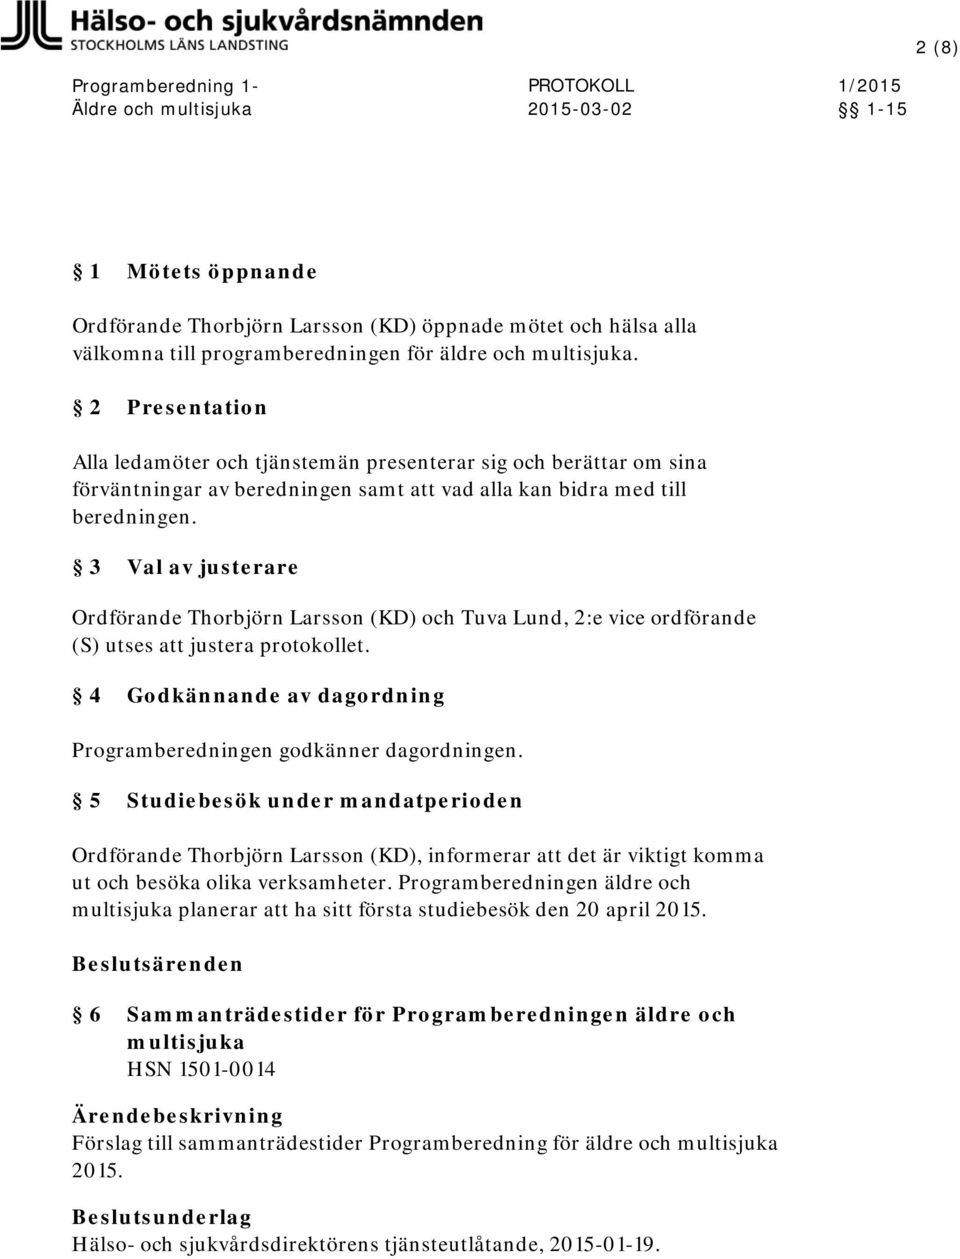 3 Val av justerare Ordförande Thorbjörn Larsson (KD) och Tuva Lund, 2:e vice ordförande utses justera protokollet. 4 Godkännande av dagordning Programberedningen godkänner dagordningen.